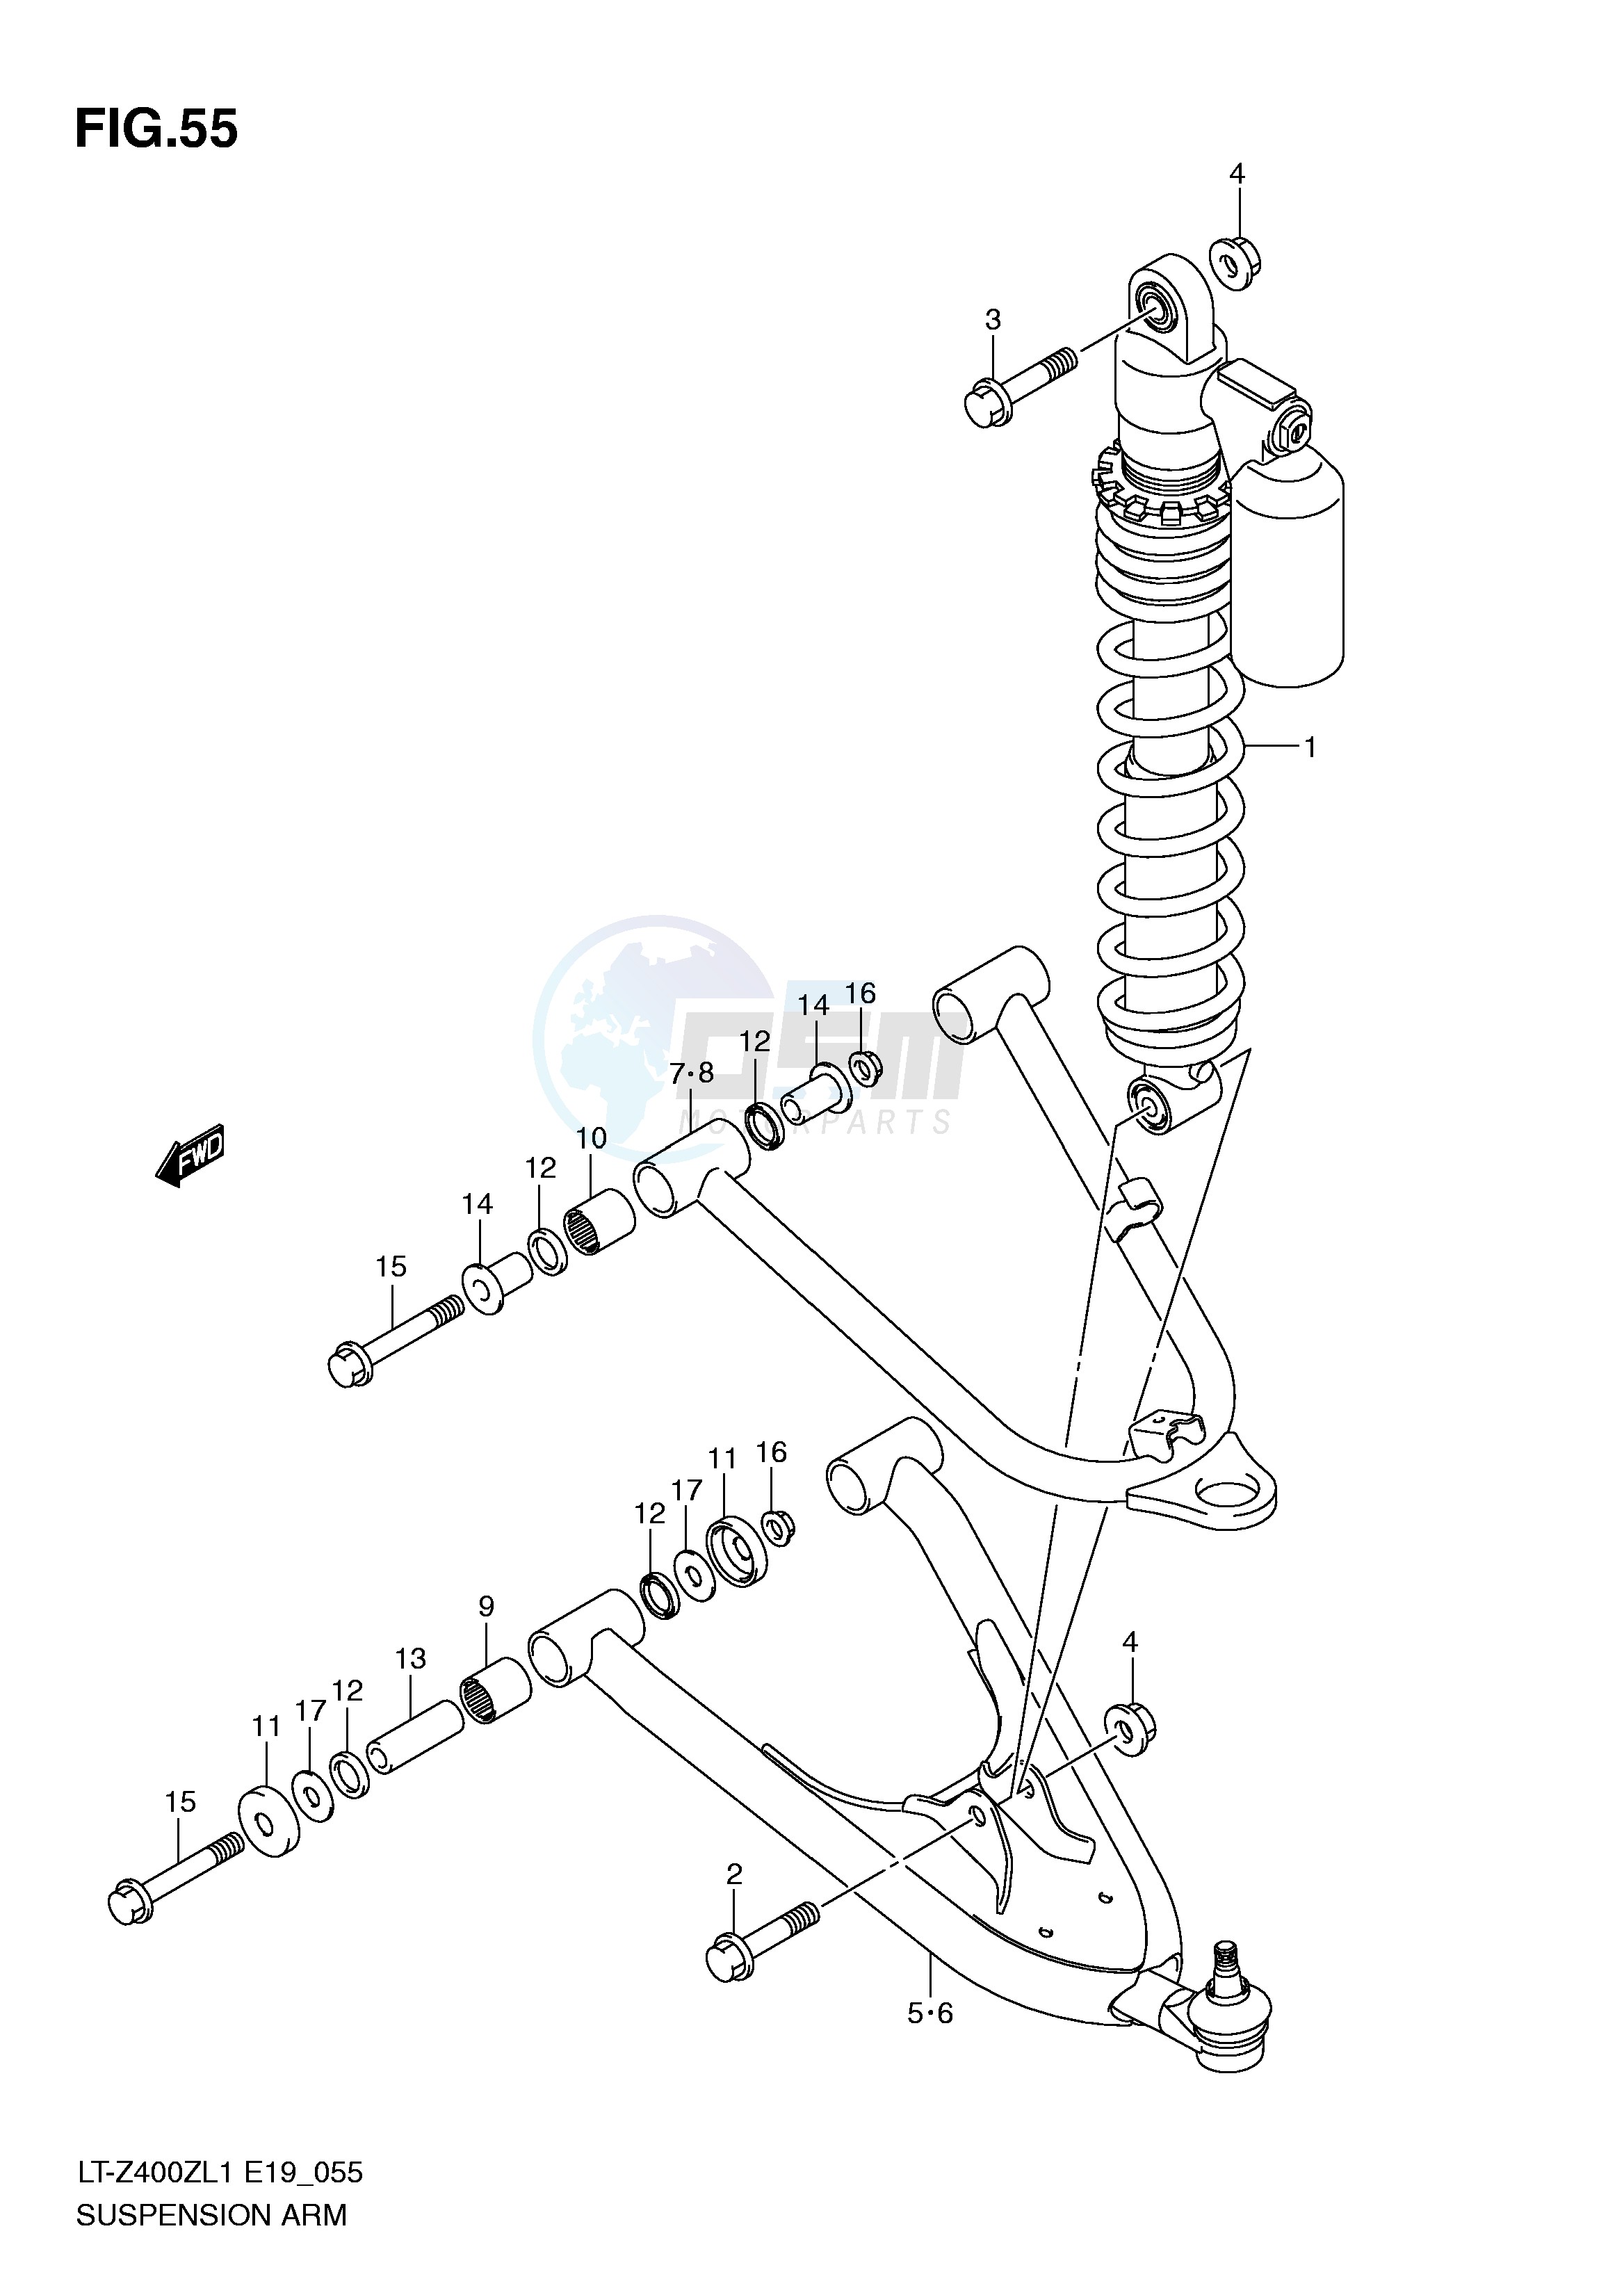 SUSPENSION ARM (LT-Z400ZL1 E19) blueprint